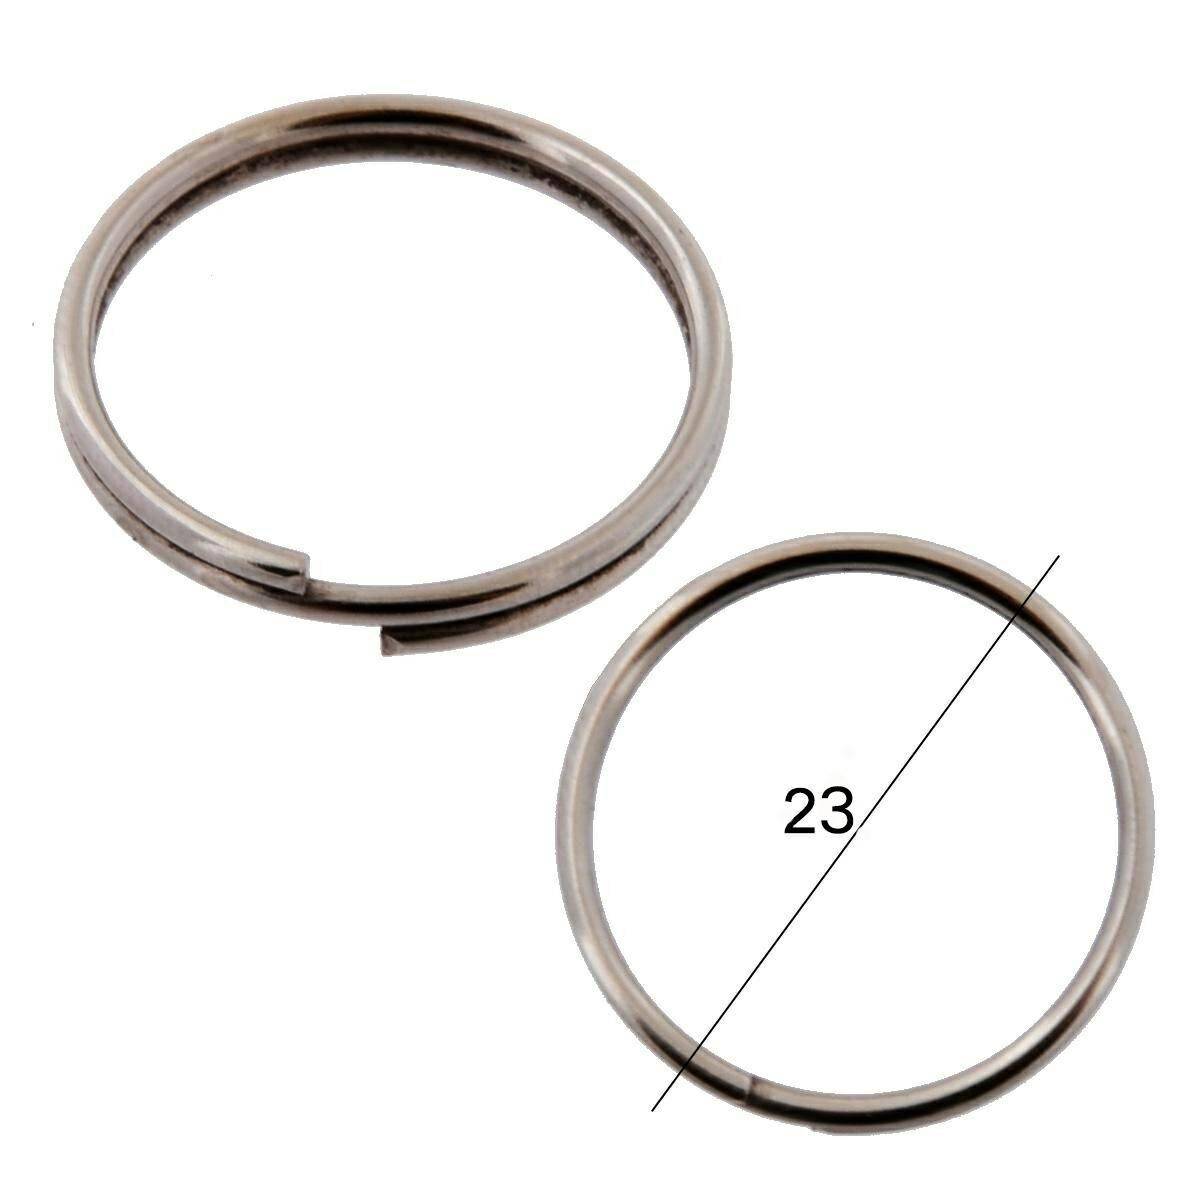 Key rings for keys WIS normal diameter 23mm